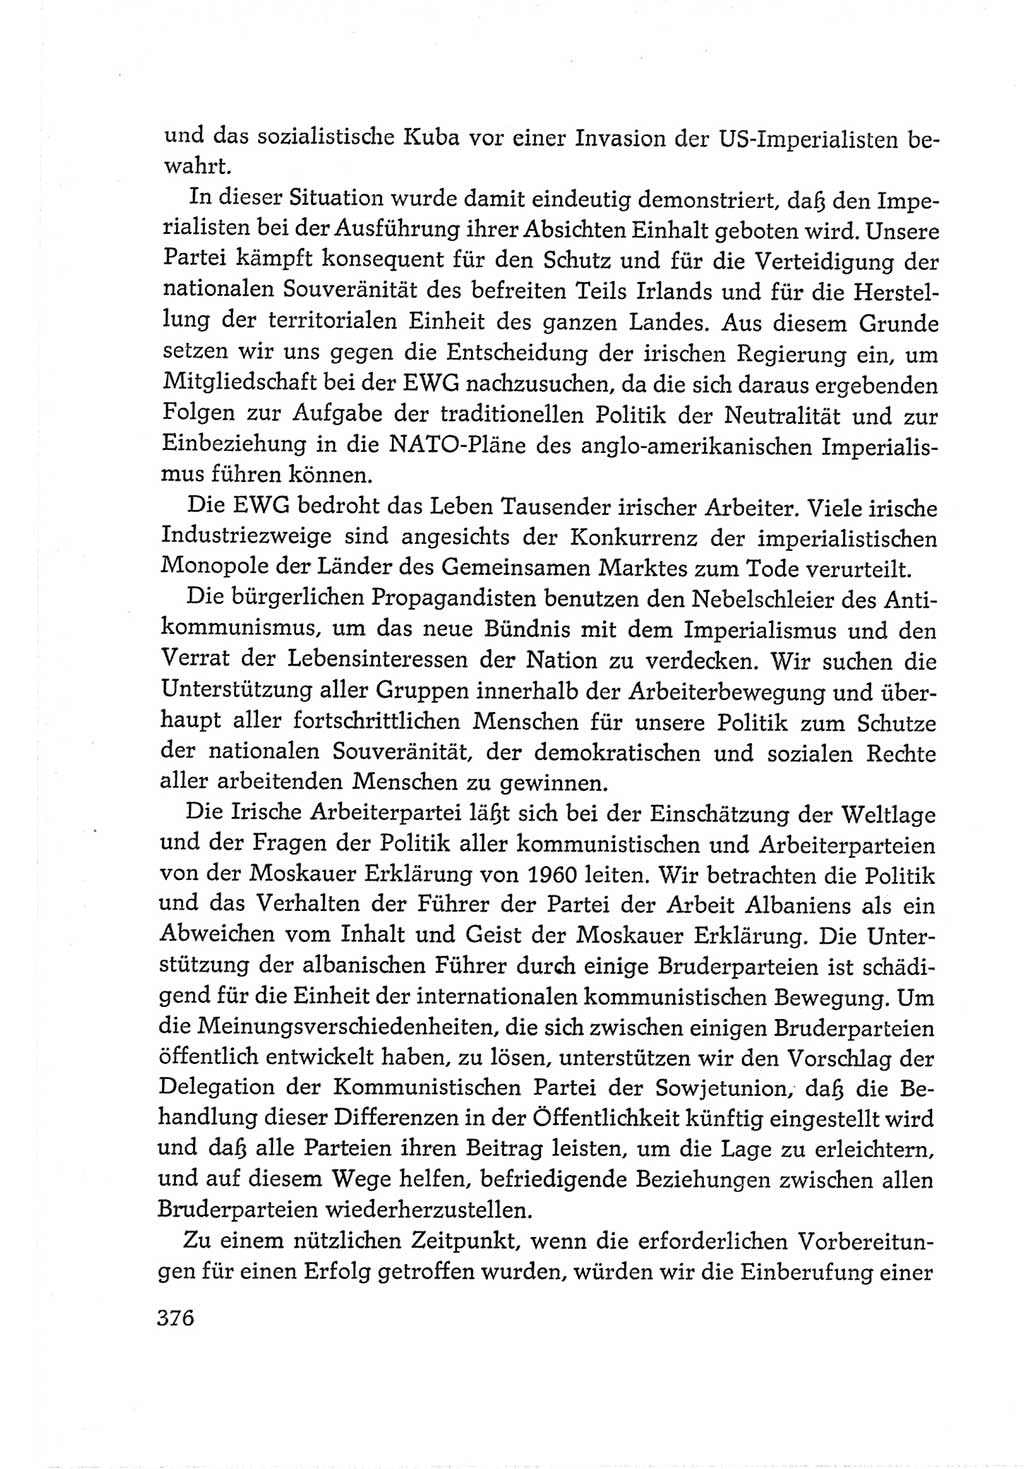 Protokoll der Verhandlungen des Ⅵ. Parteitages der Sozialistischen Einheitspartei Deutschlands (SED) [Deutsche Demokratische Republik (DDR)] 1963, Band Ⅱ, Seite 376 (Prot. Verh. Ⅵ. PT SED DDR 1963, Bd. Ⅱ, S. 376)